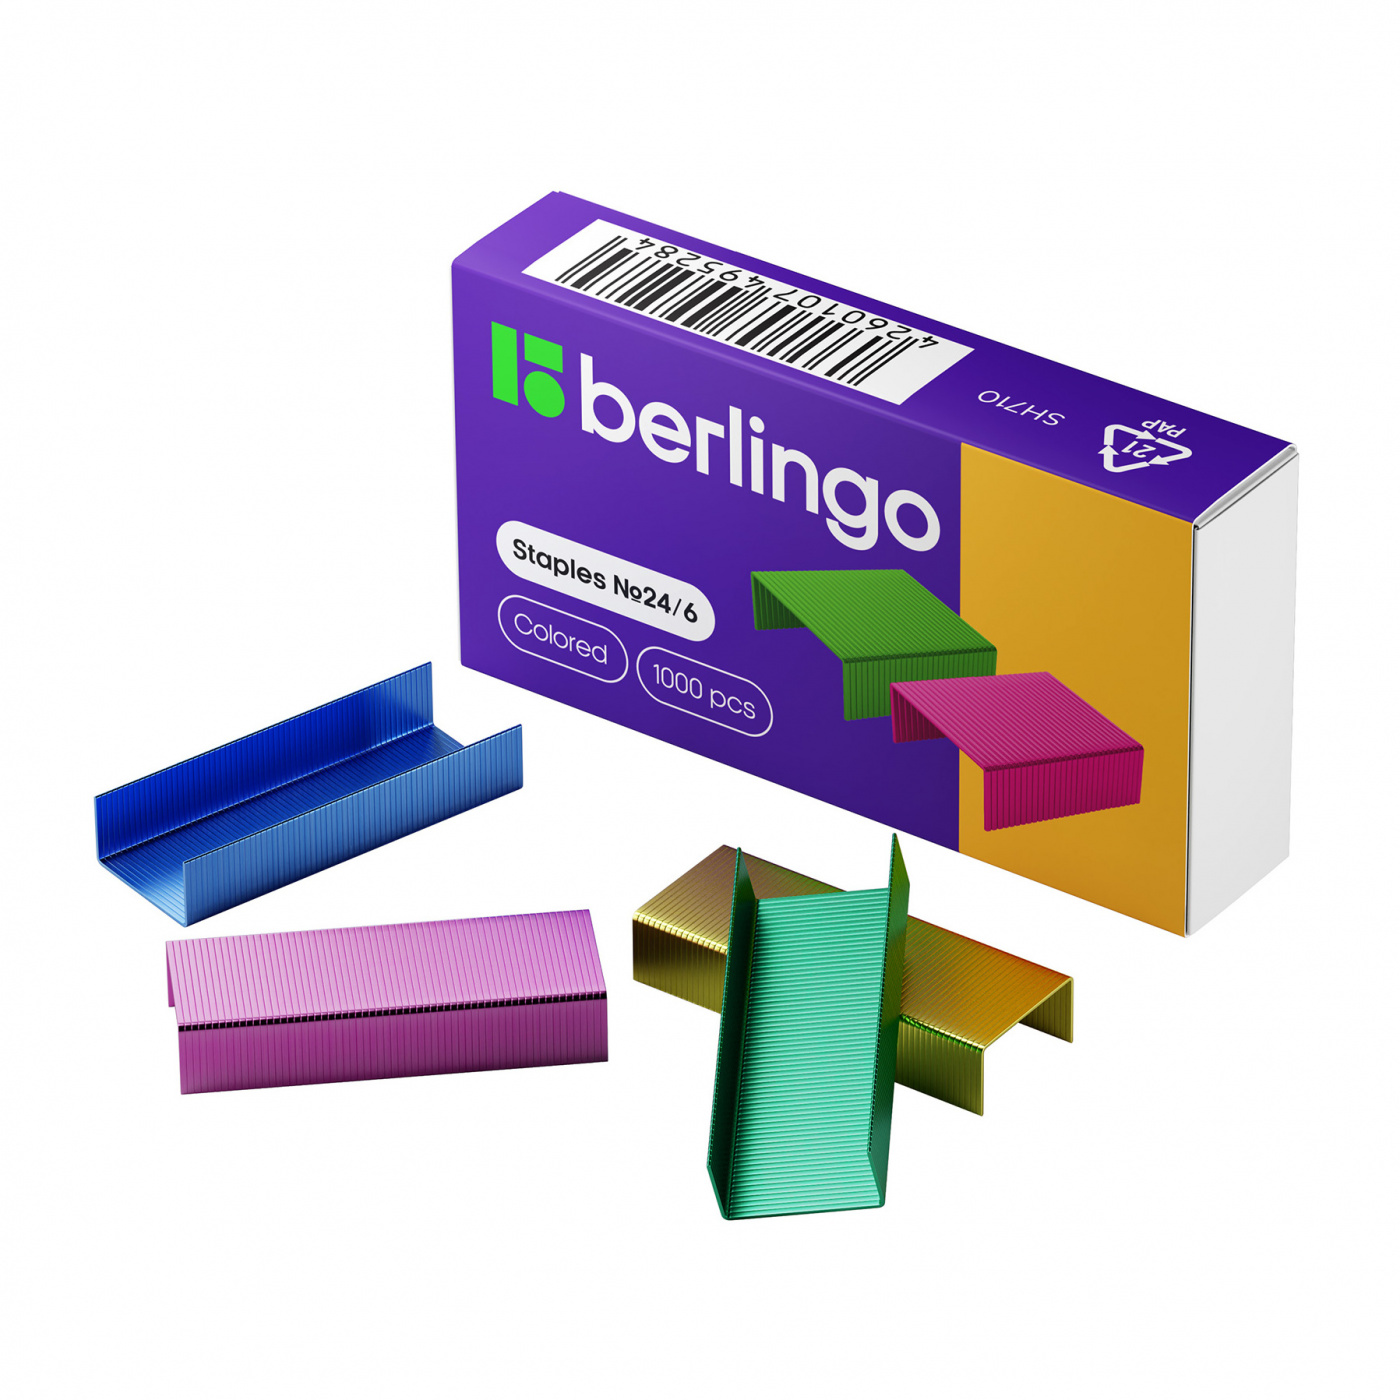 Скобы для степлера Beringo №24/6 1000 шт, цветные скобы для степлера beringo 24 6 1000 шт ные